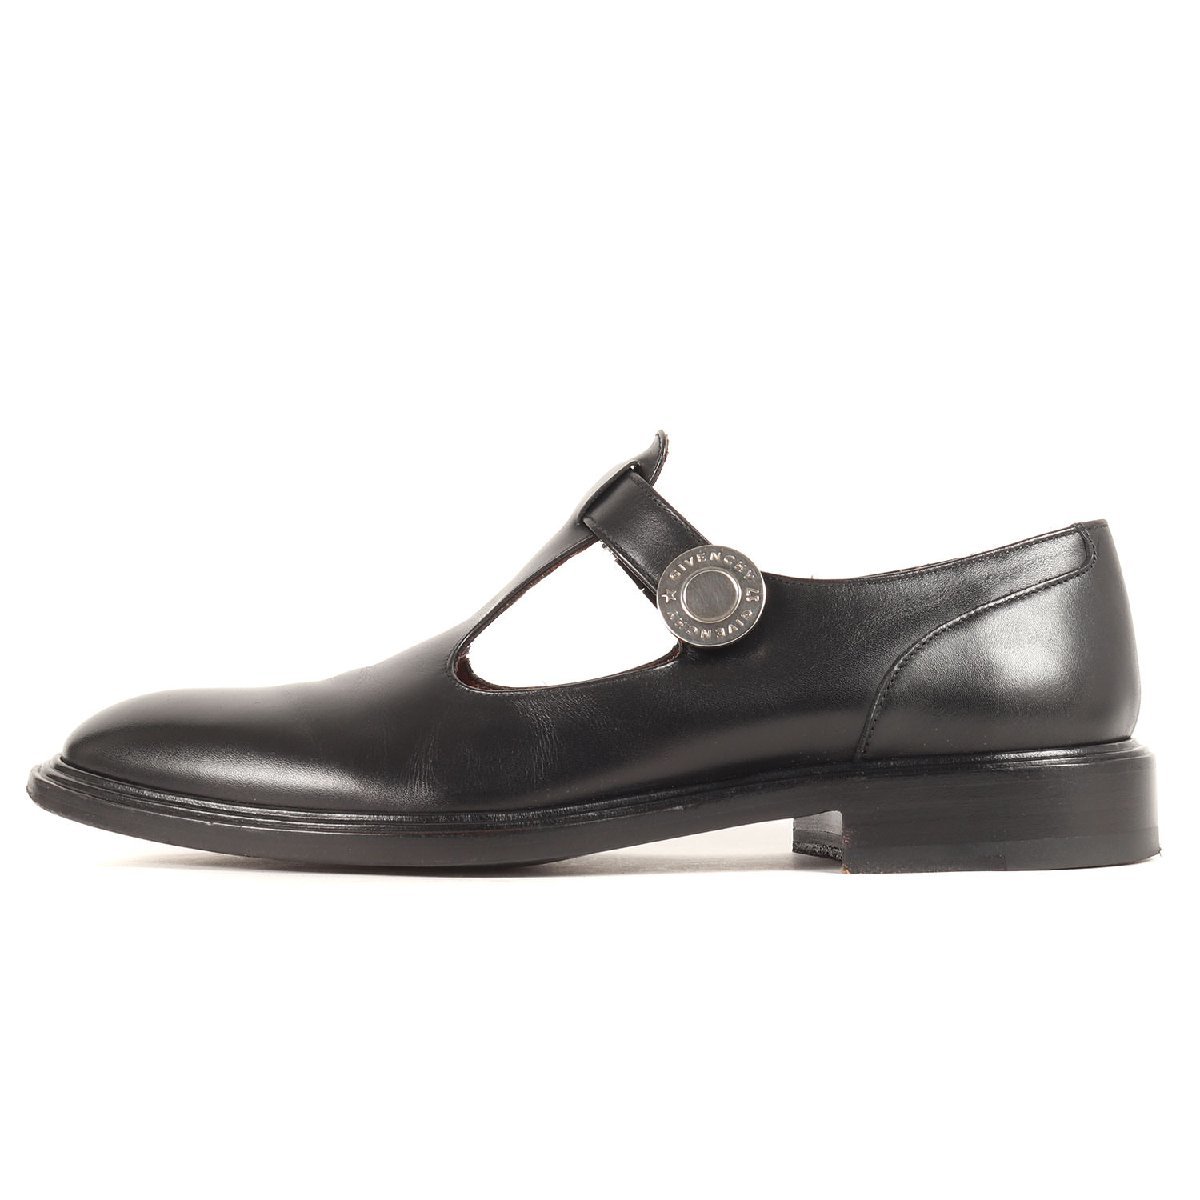 GIVENCHY ジバンシィ サイズ:41 サイドスナップ レザー メリージェーン シューズ BM08161 革靴 短靴 ブラック 黒 イタリア製 ブランド